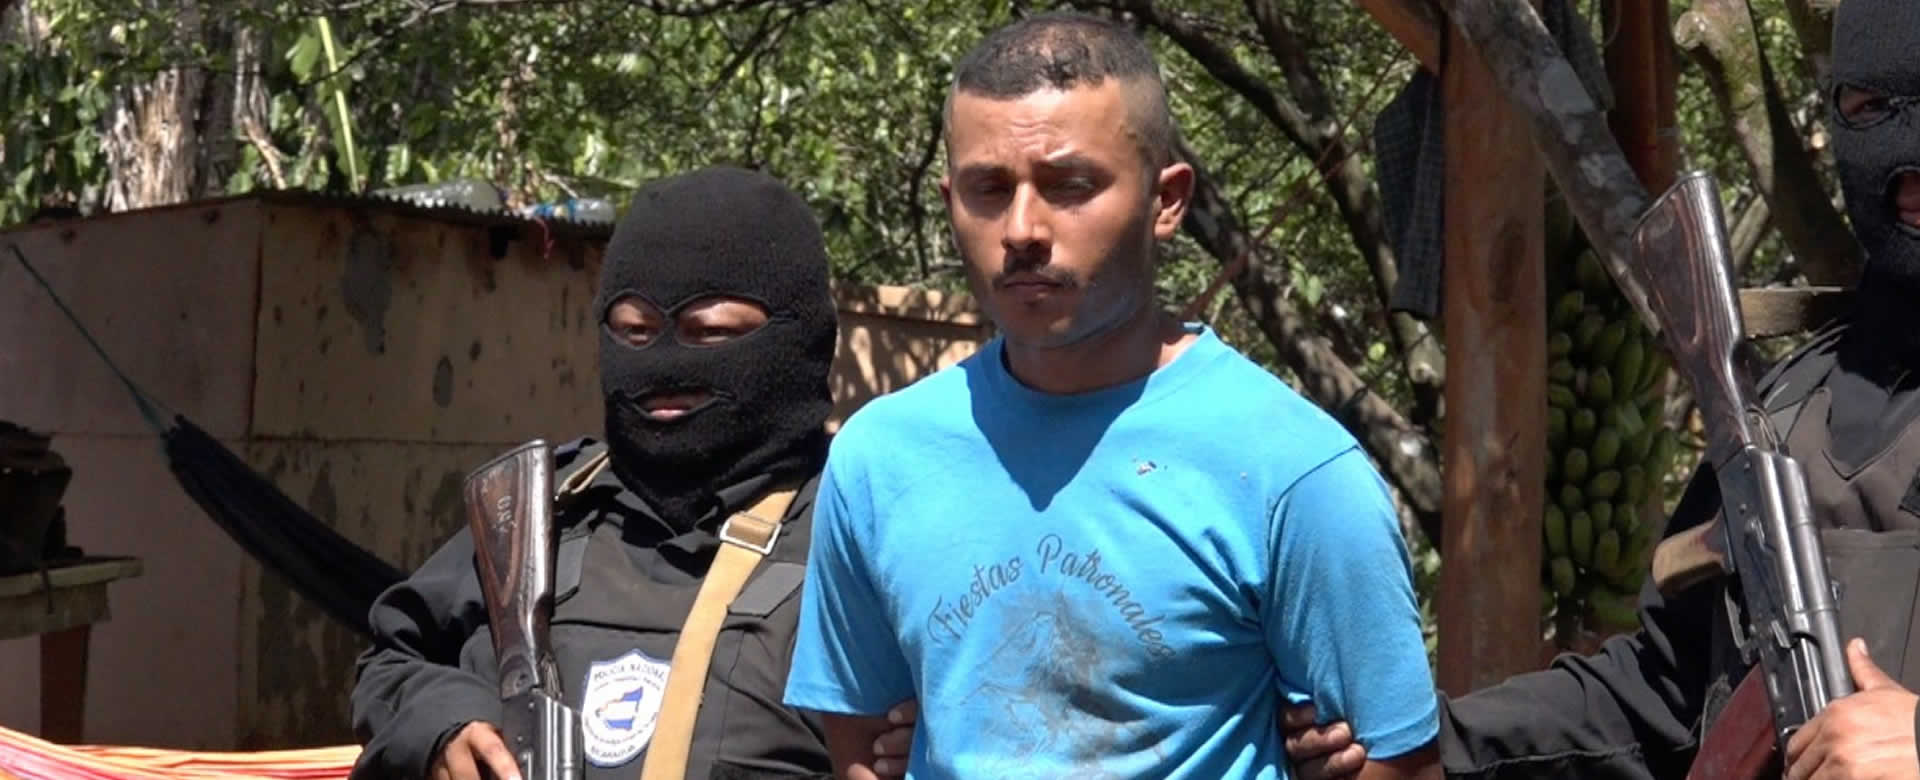 Policía de Masatepe incautó tacos de cocaína en una finca cafetalera